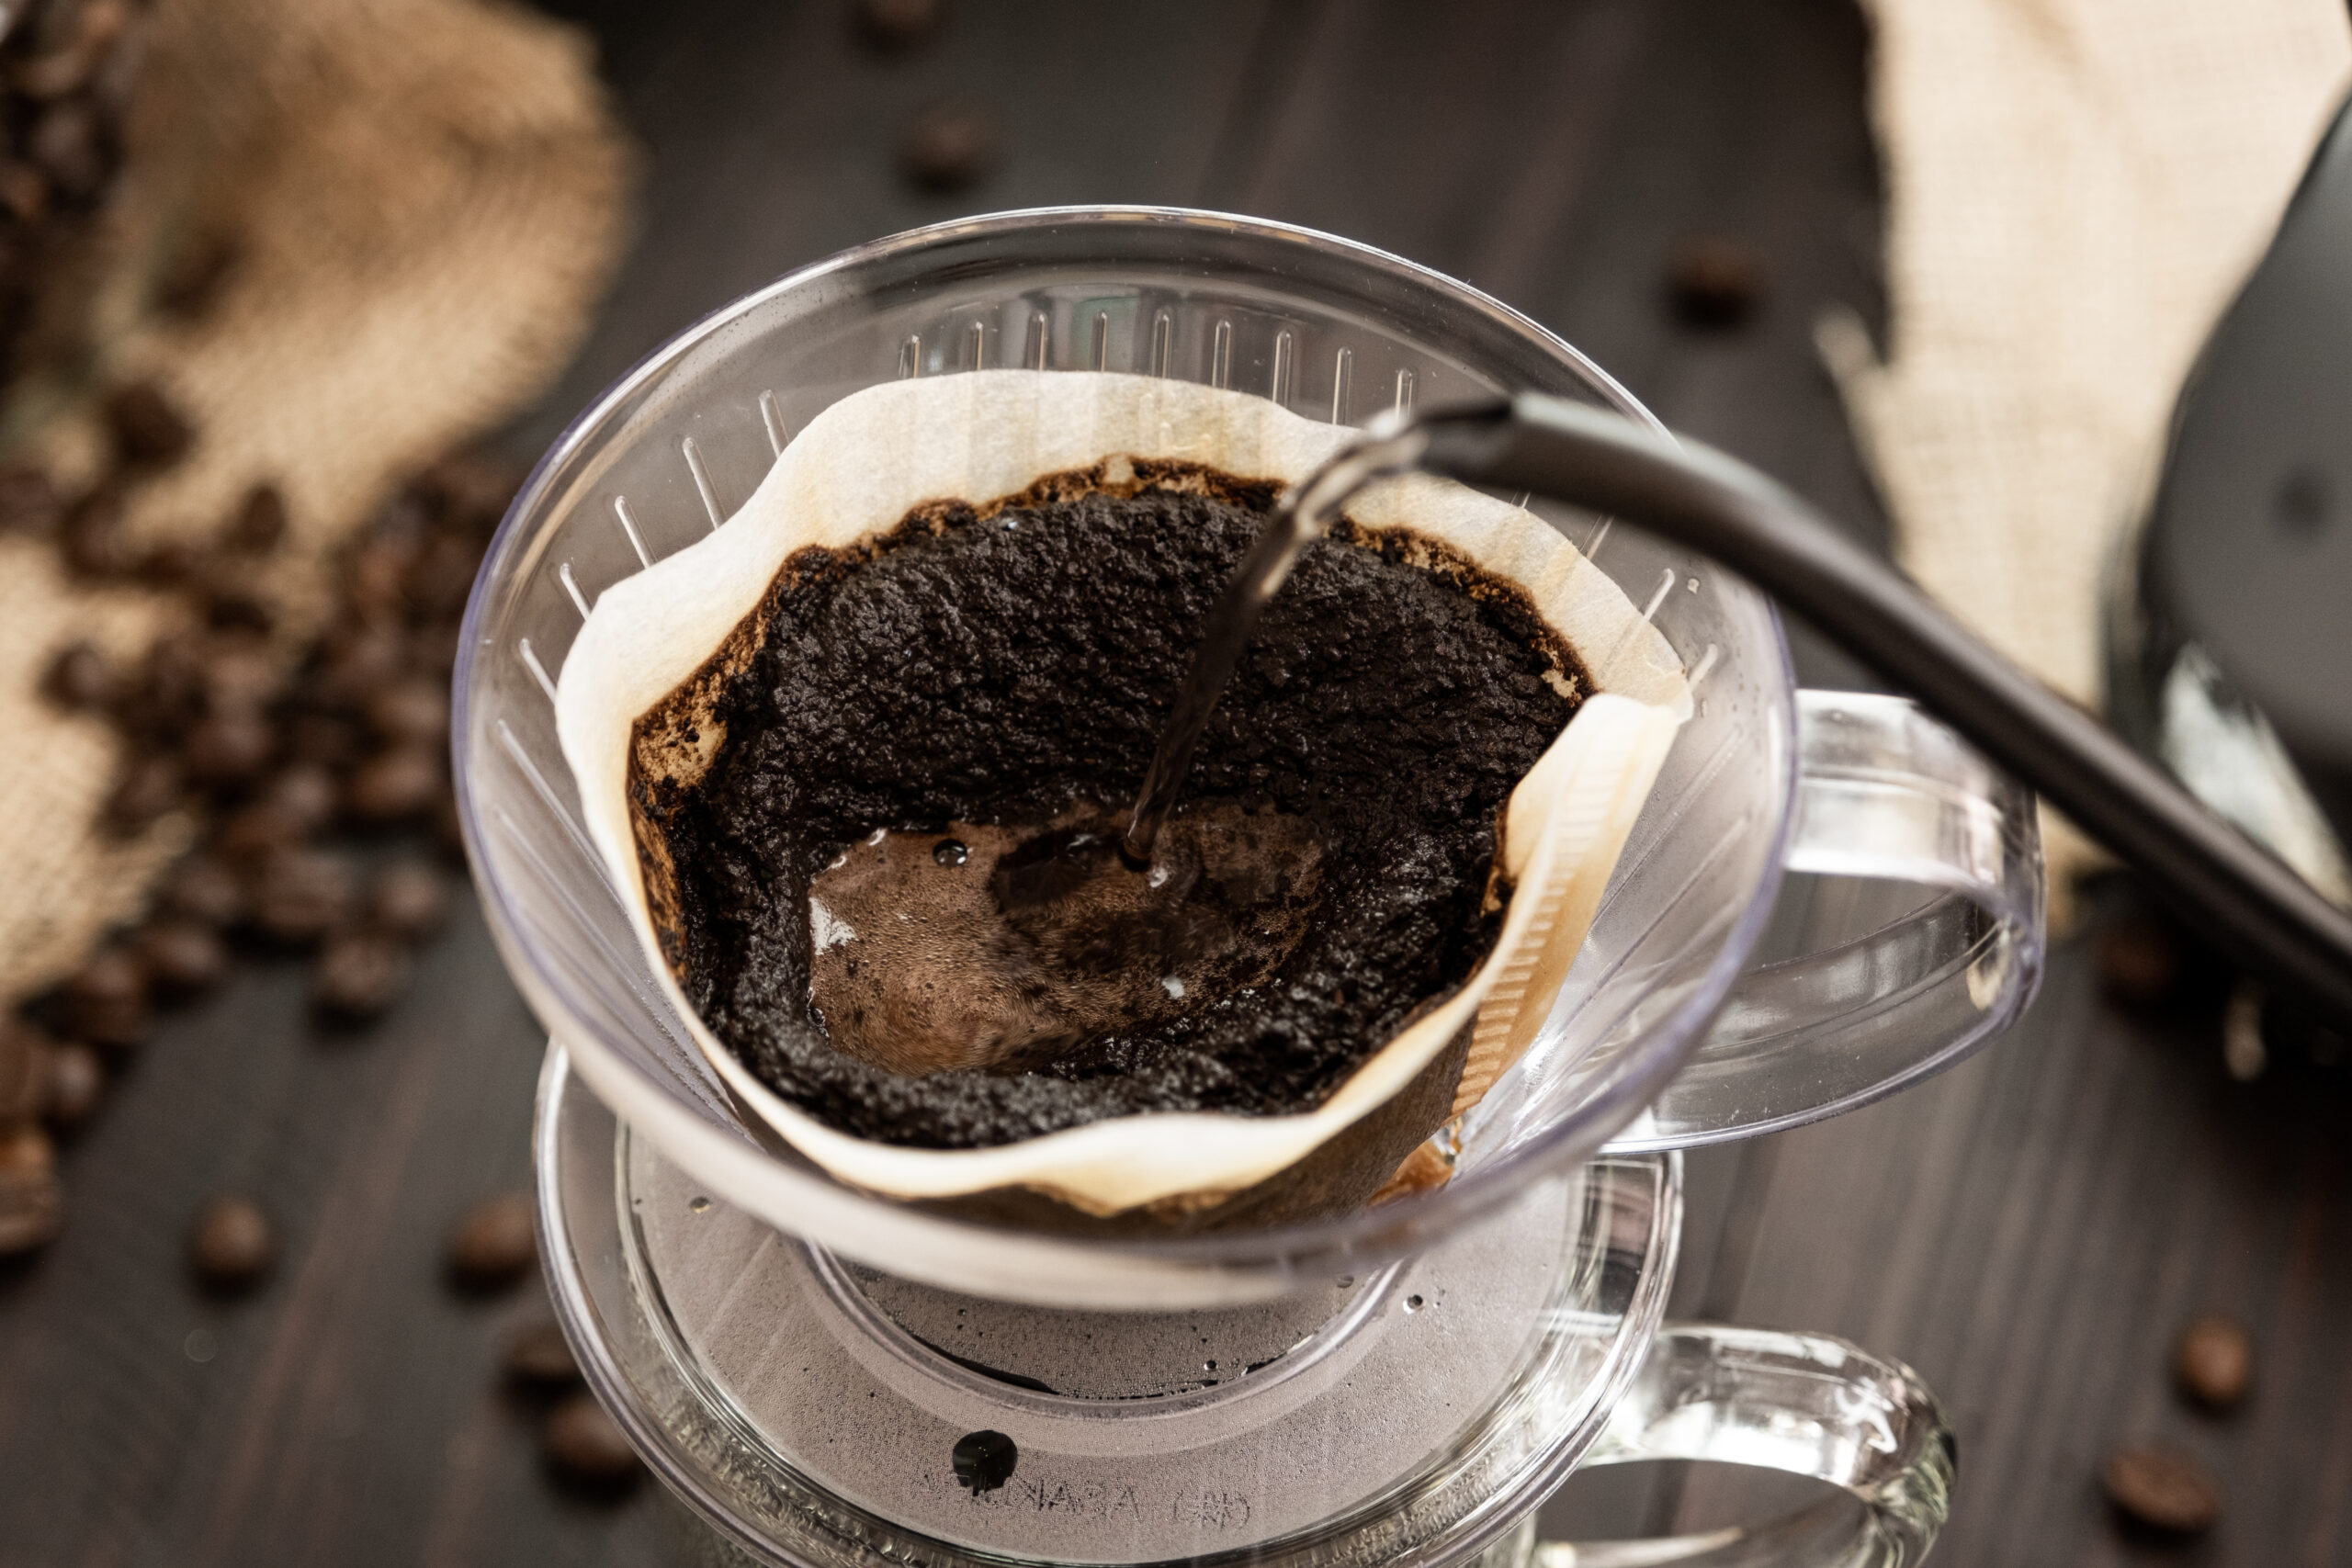 Os pontos quânticos de carbono (CACQDs)podem vir da borra de café